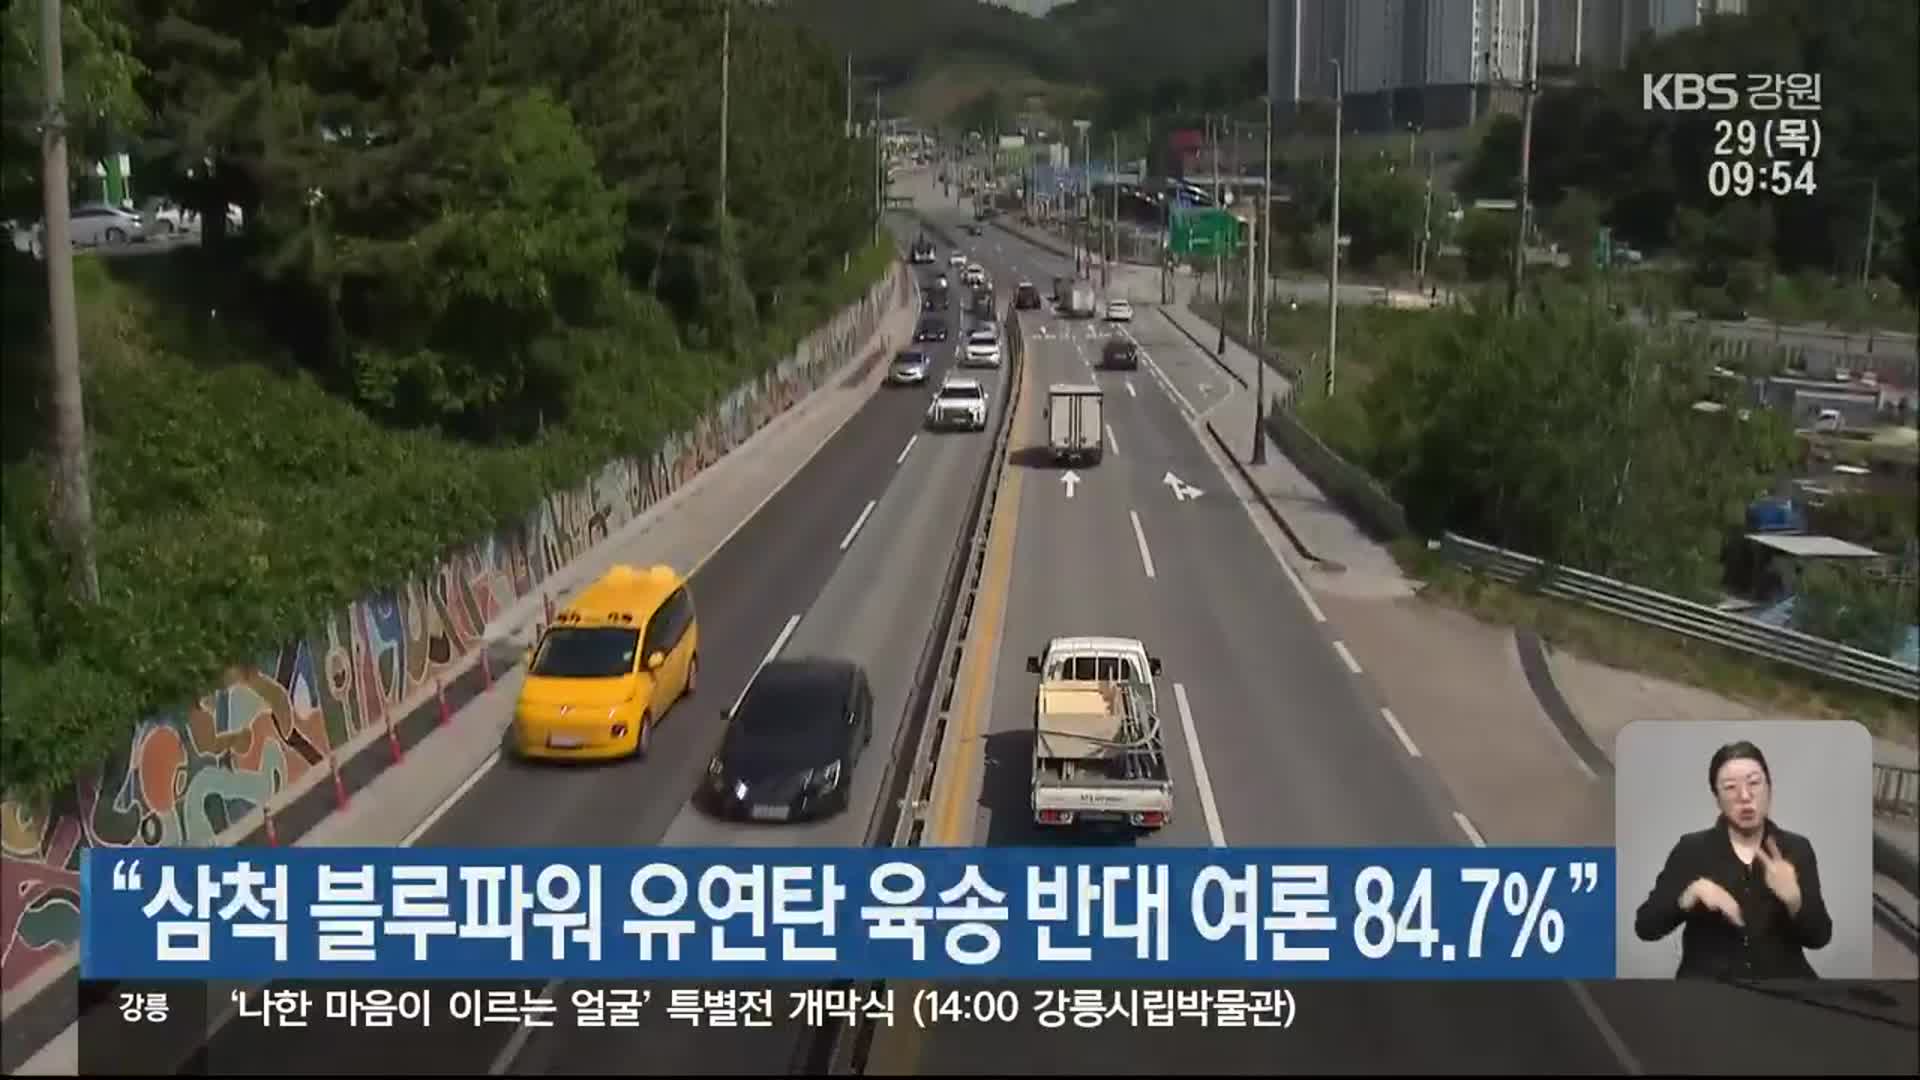 “삼척 블루파워 유연탄 육송 반대 여론 84.7%”